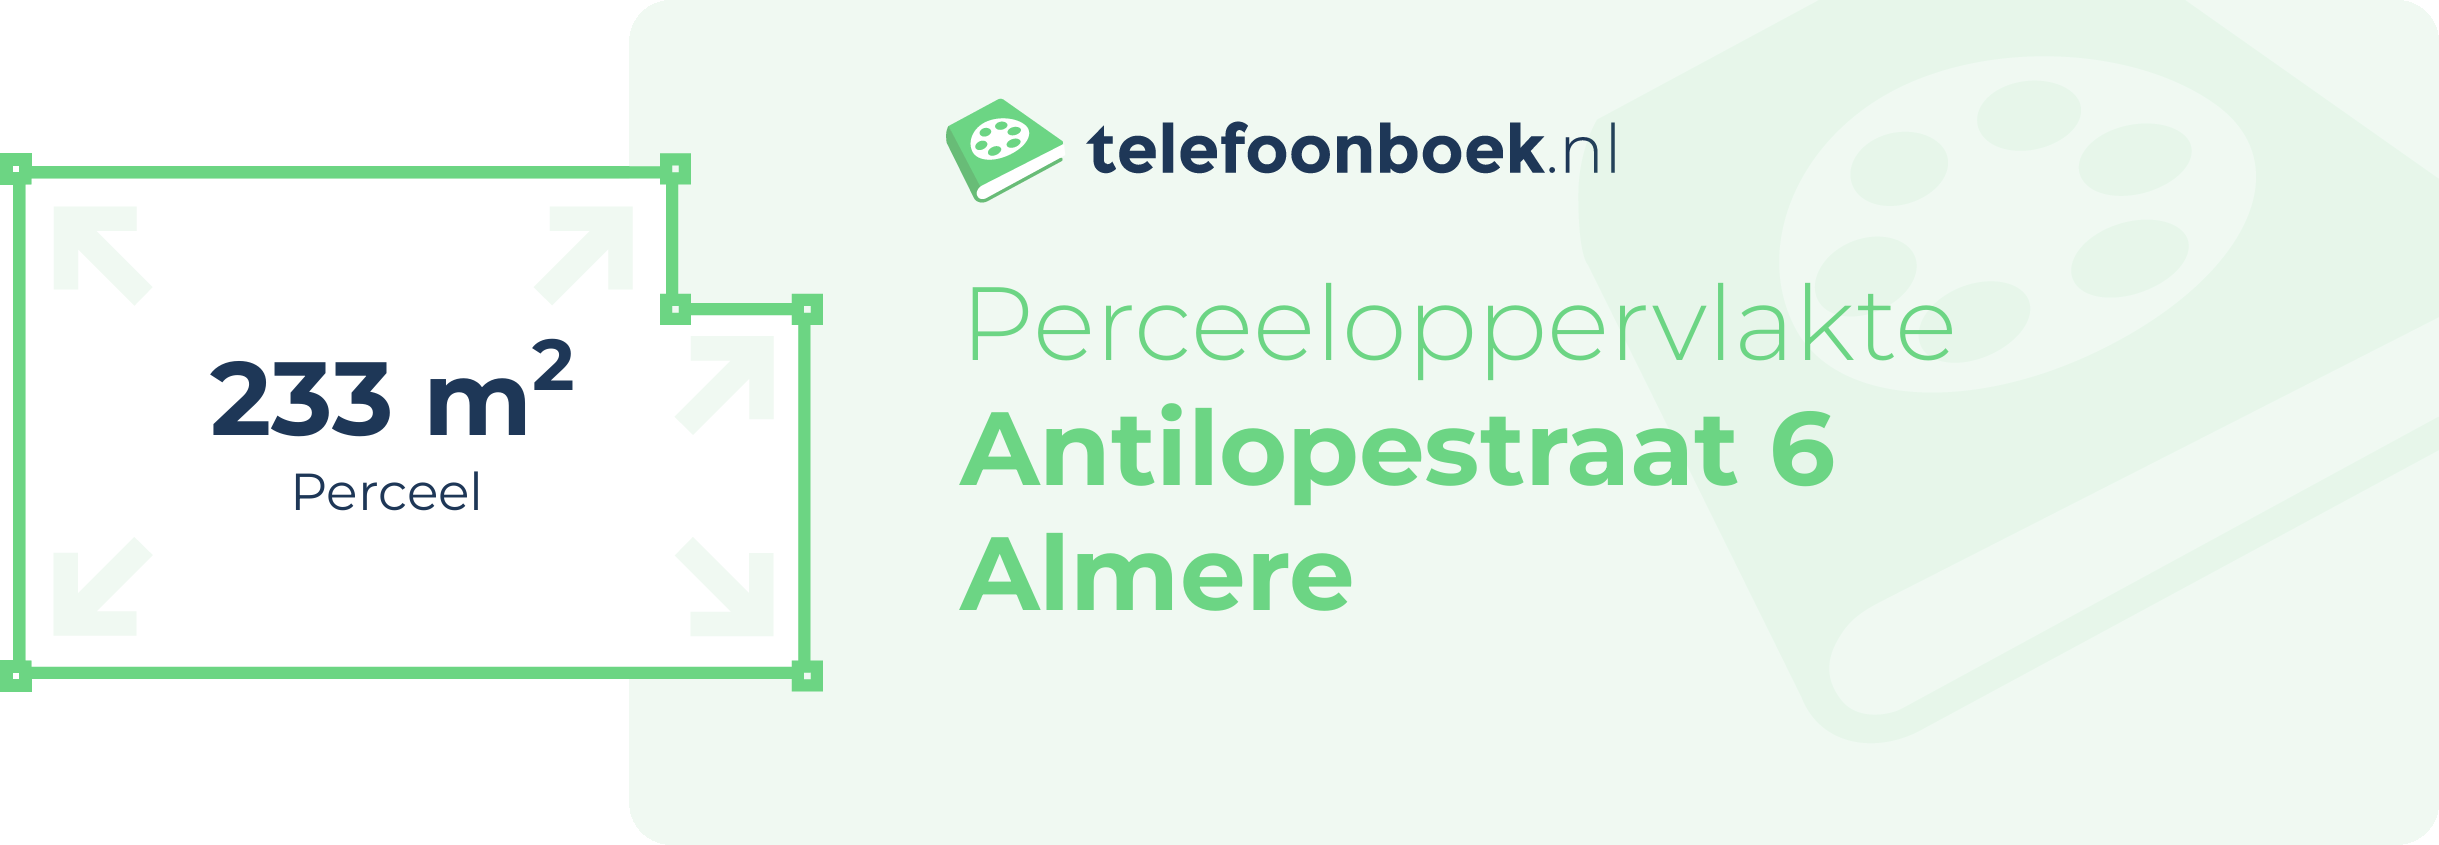 Perceeloppervlakte Antilopestraat 6 Almere